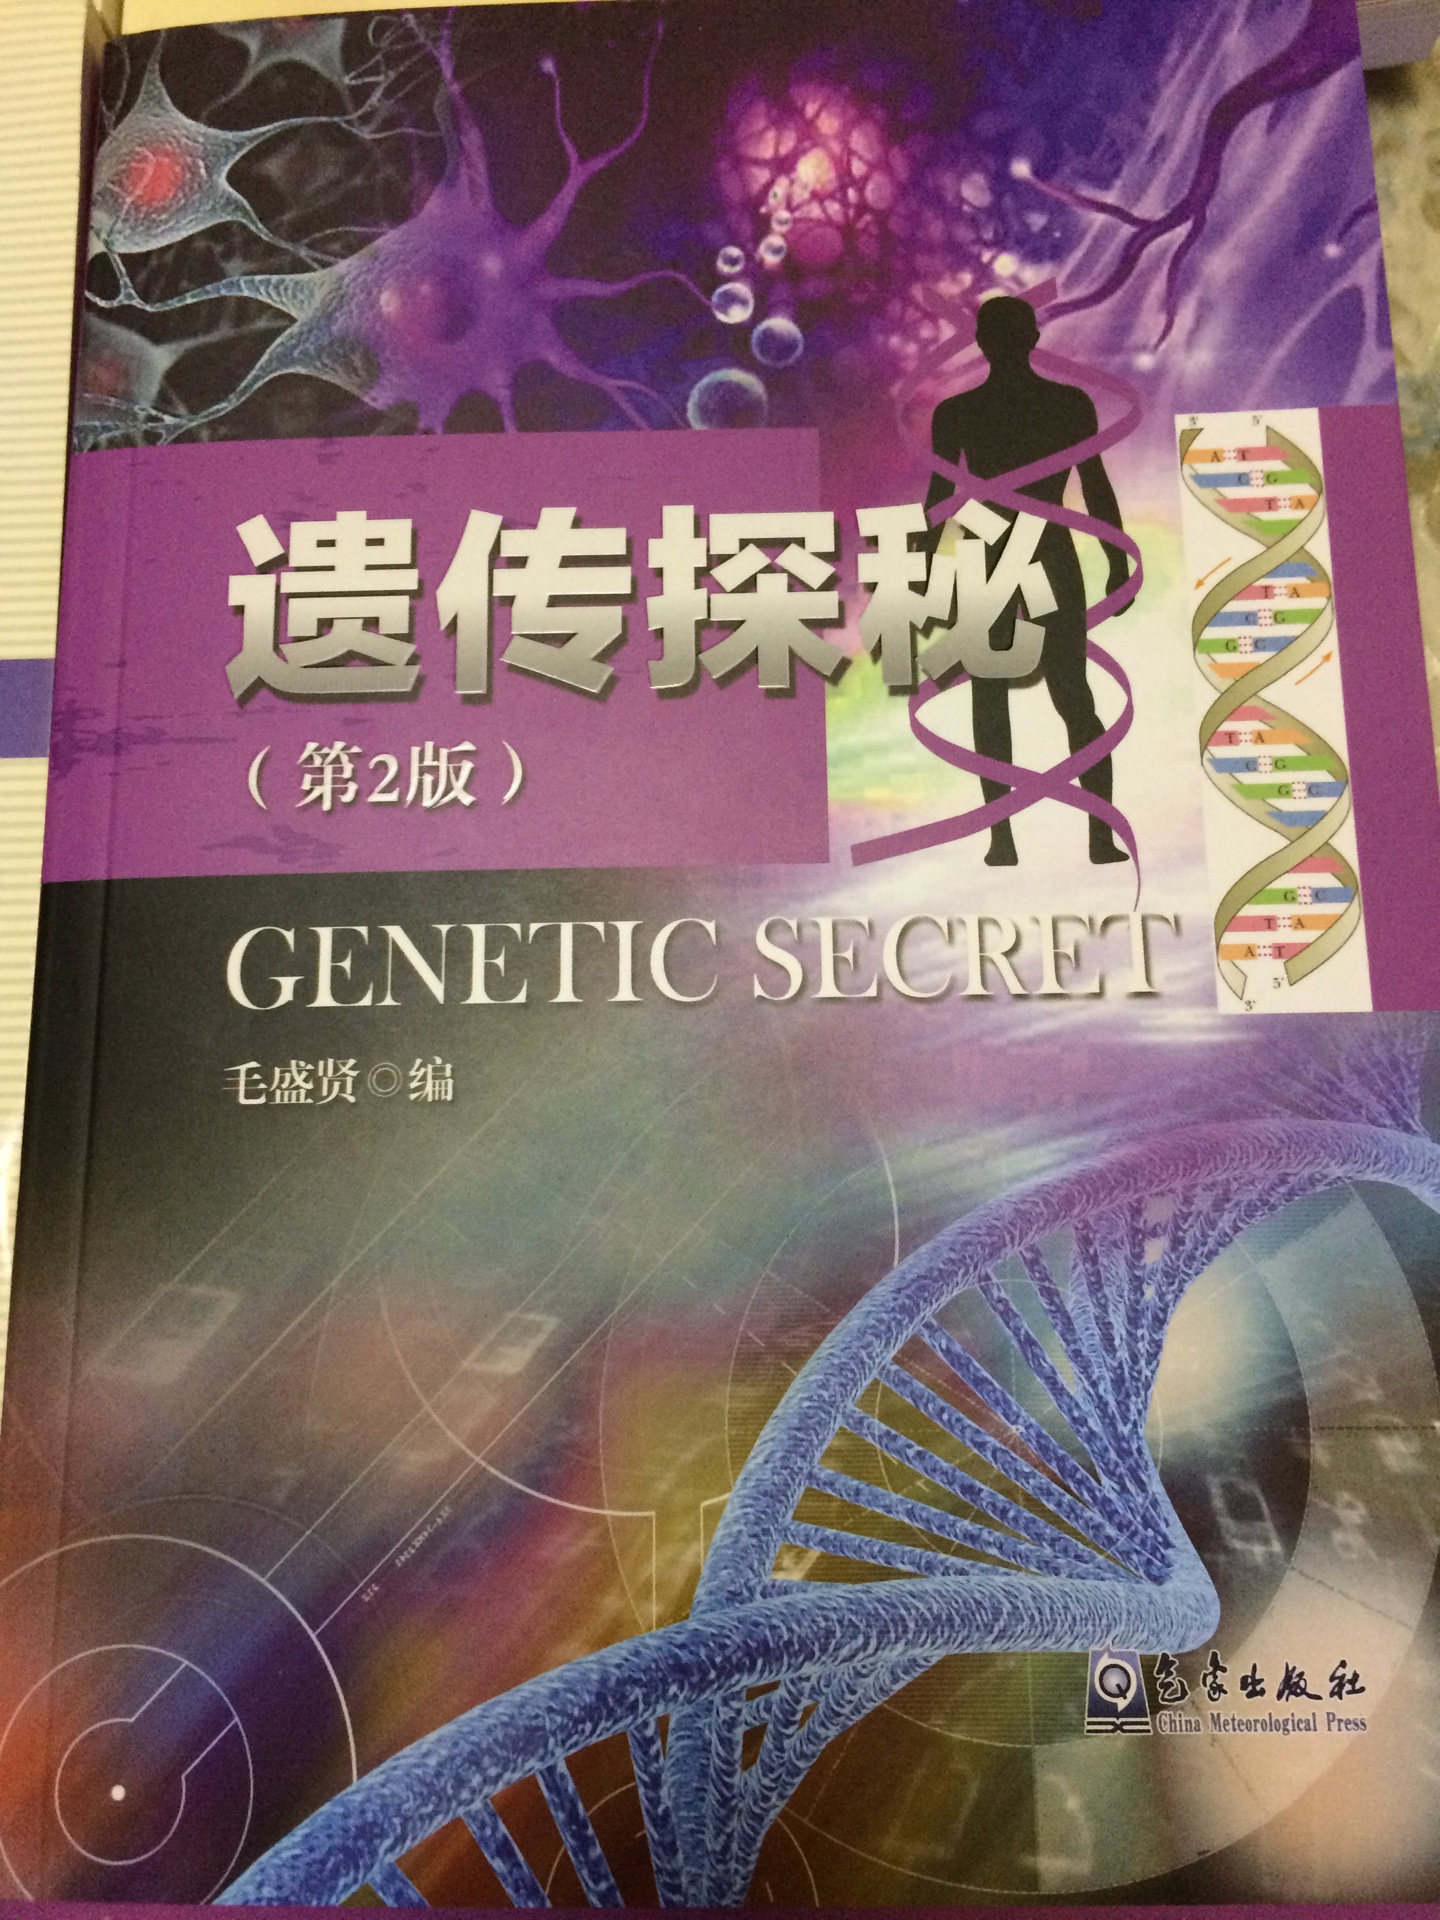 无塑封16开，遗传学知识丰富内容详尽专业，值得阅读。